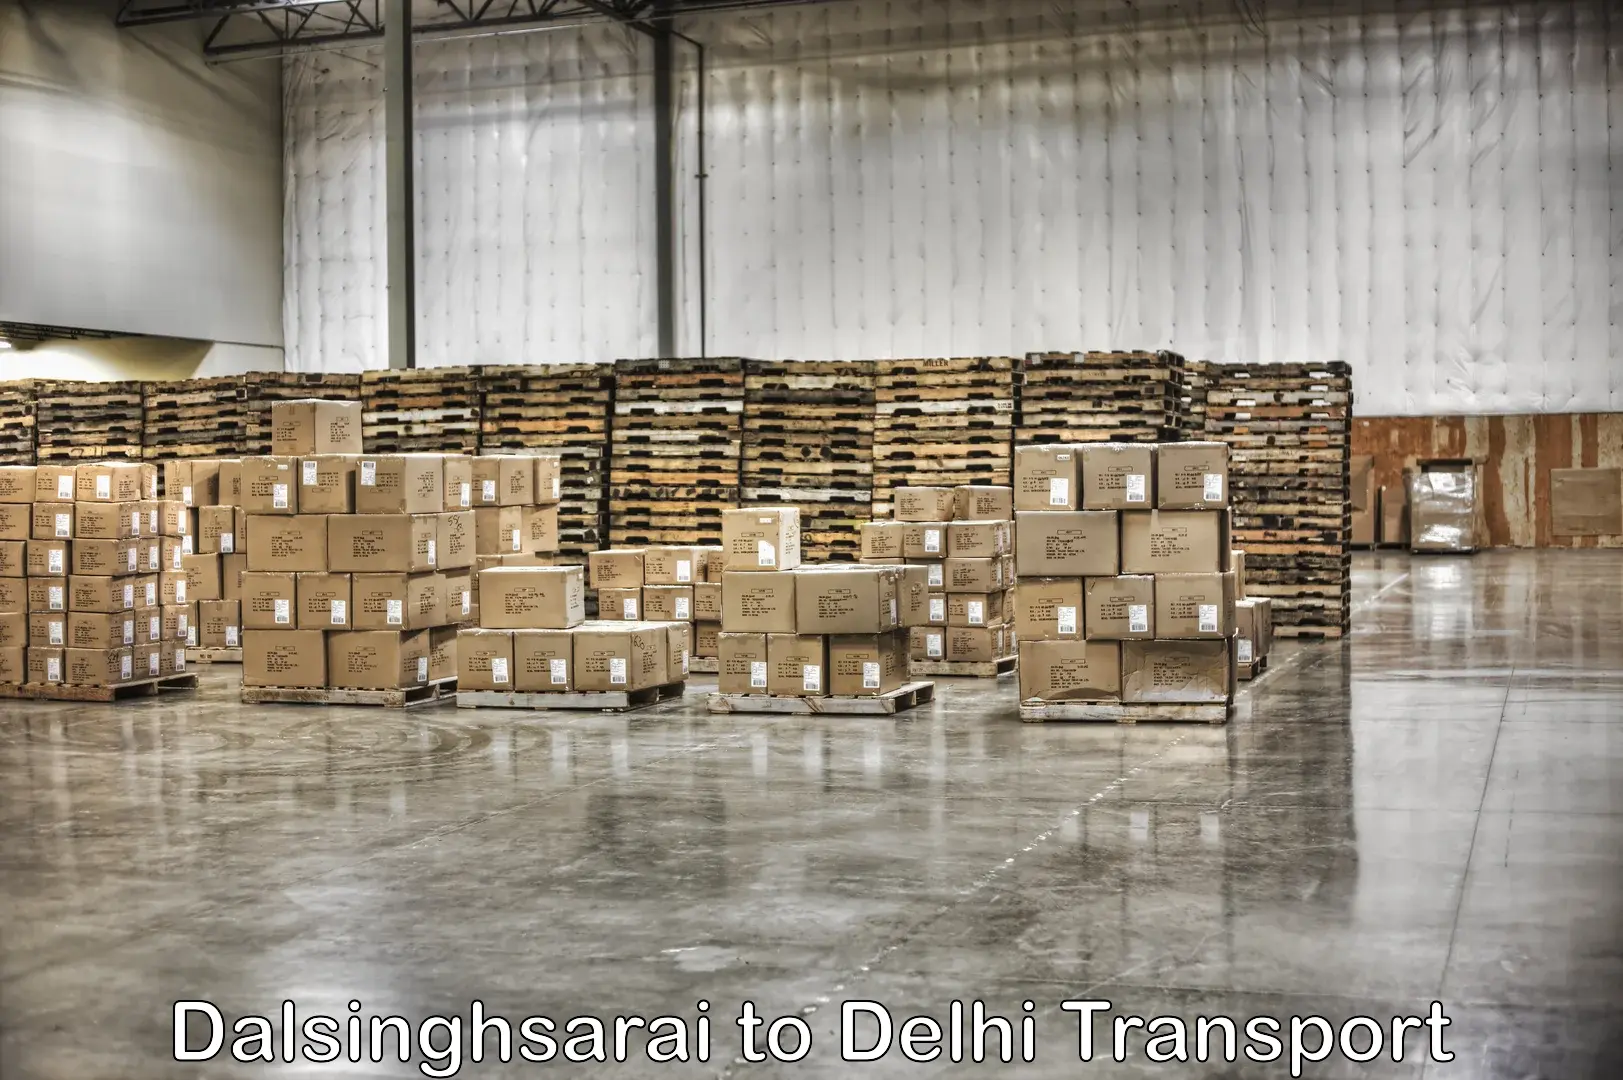 Road transport services in Dalsinghsarai to Delhi